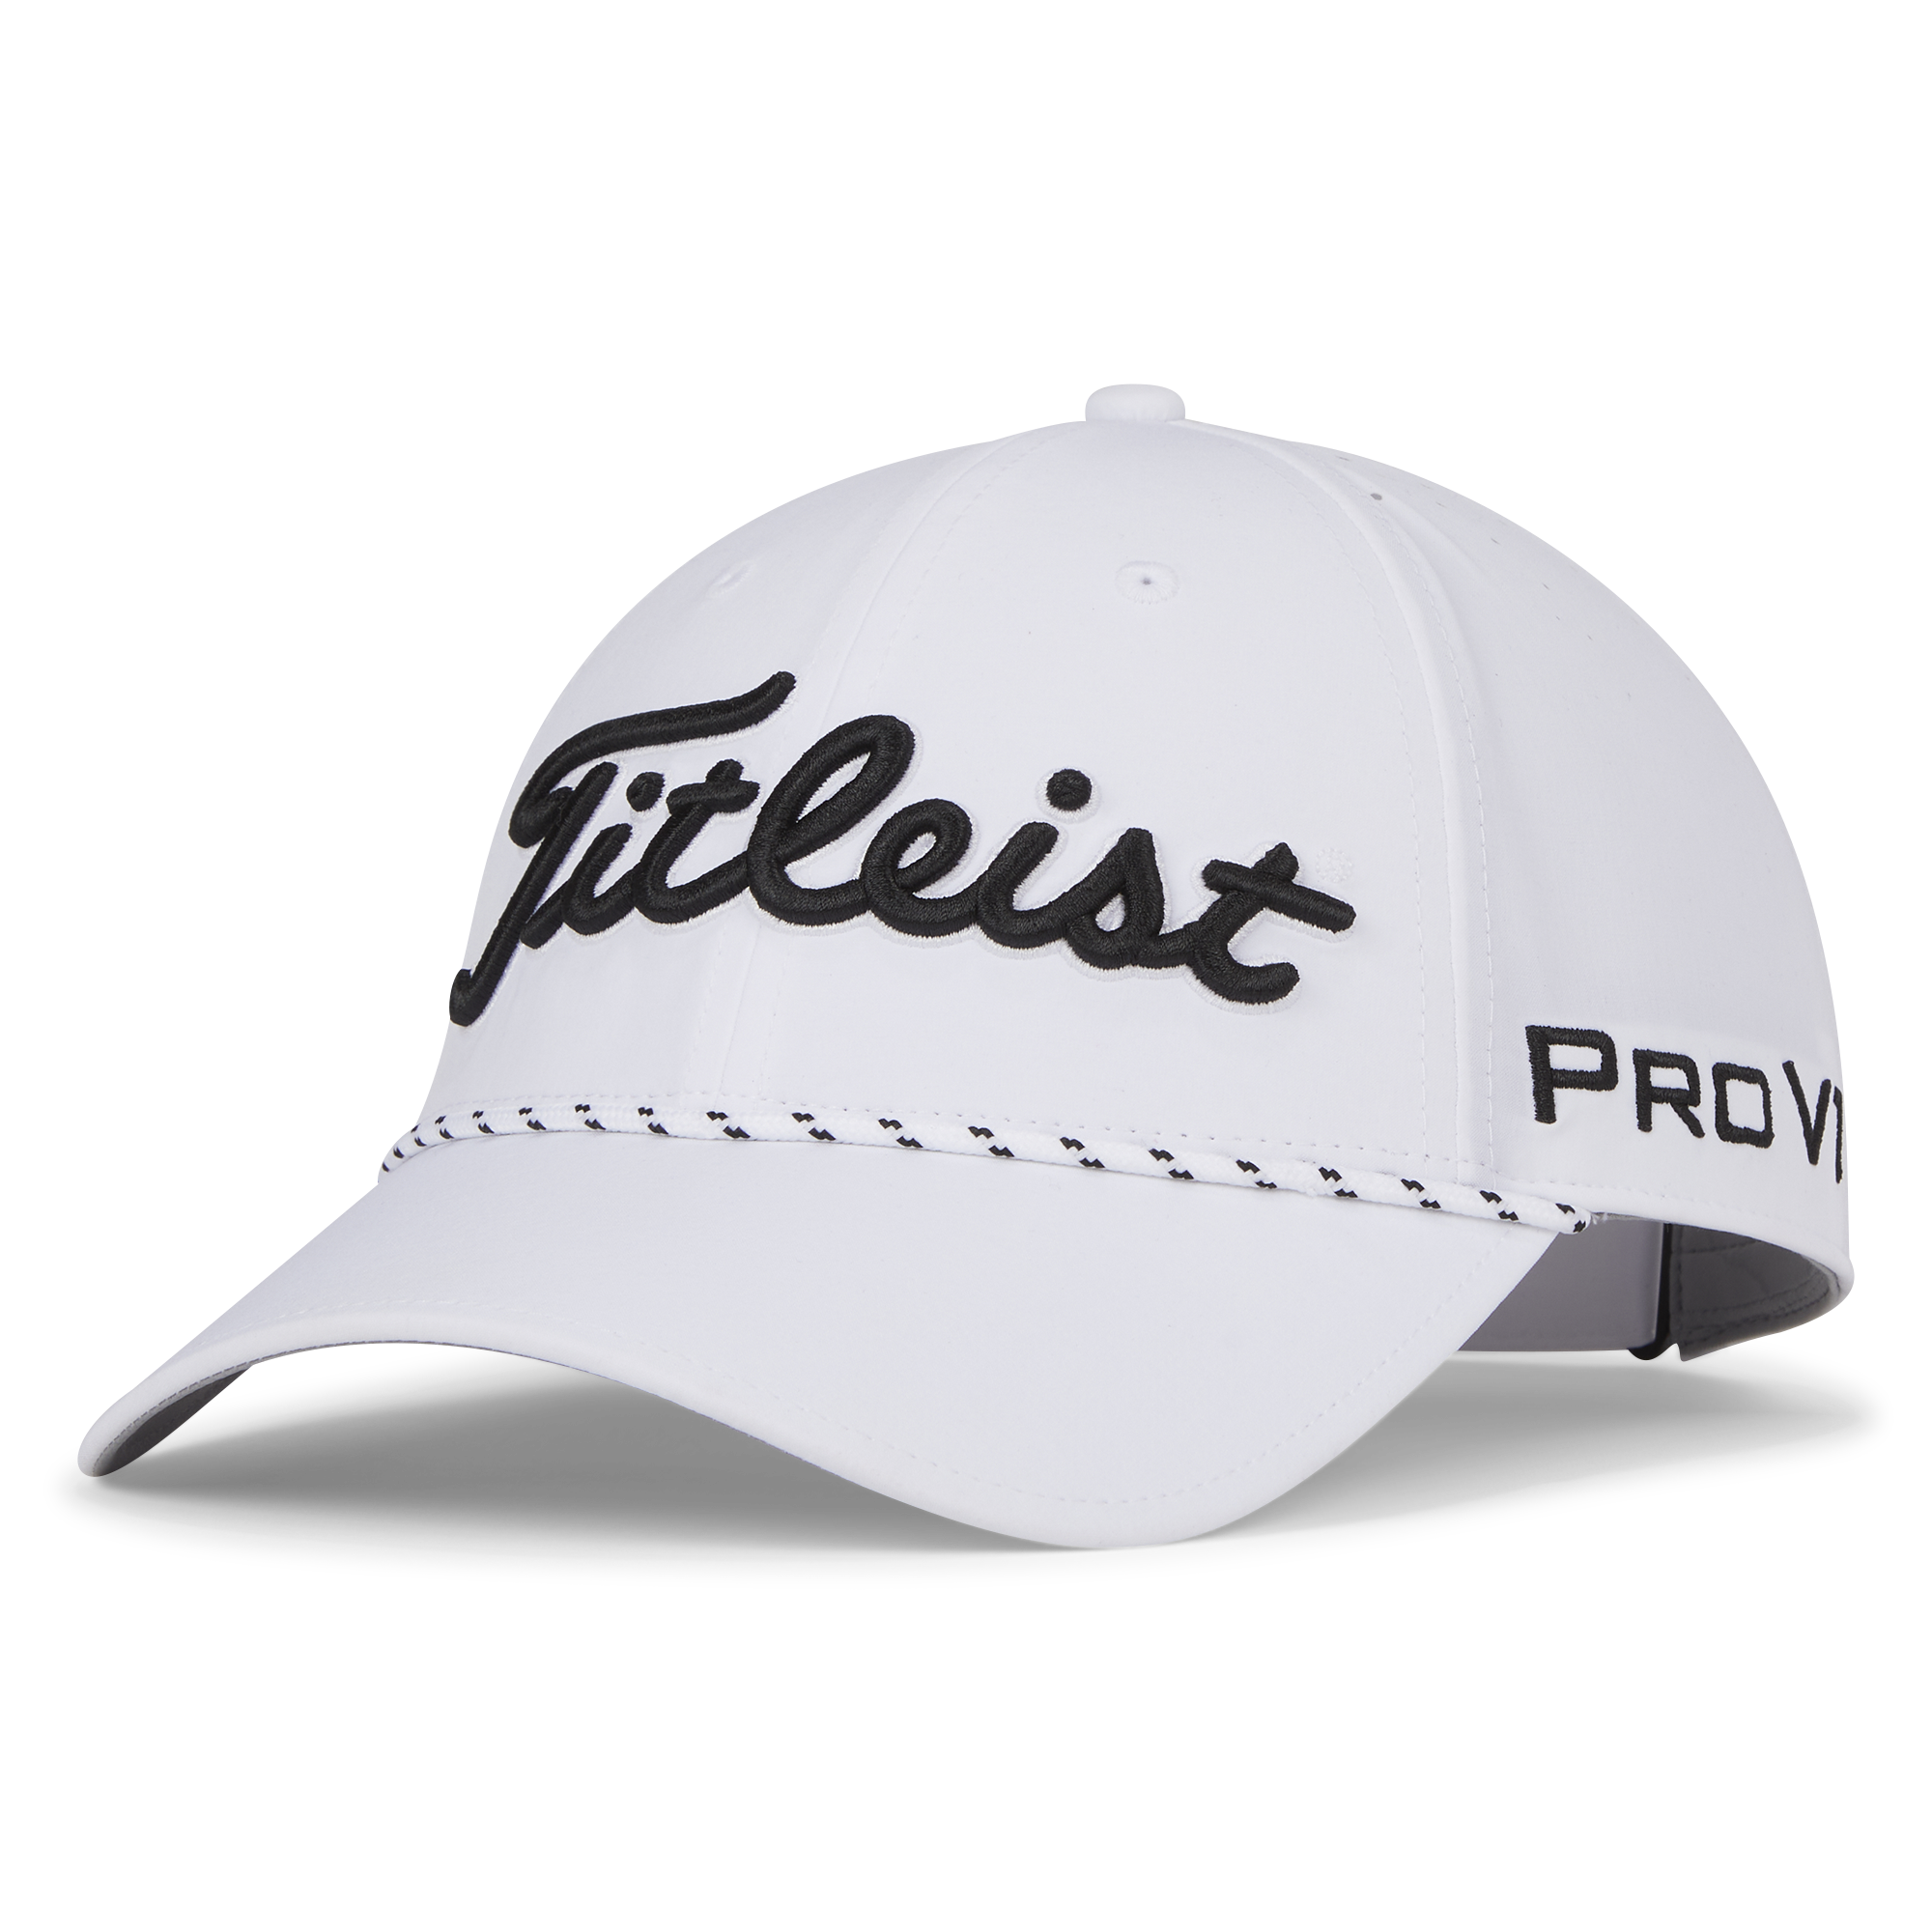 Titleist Tour Breezer golfová čepice, bílá/černá